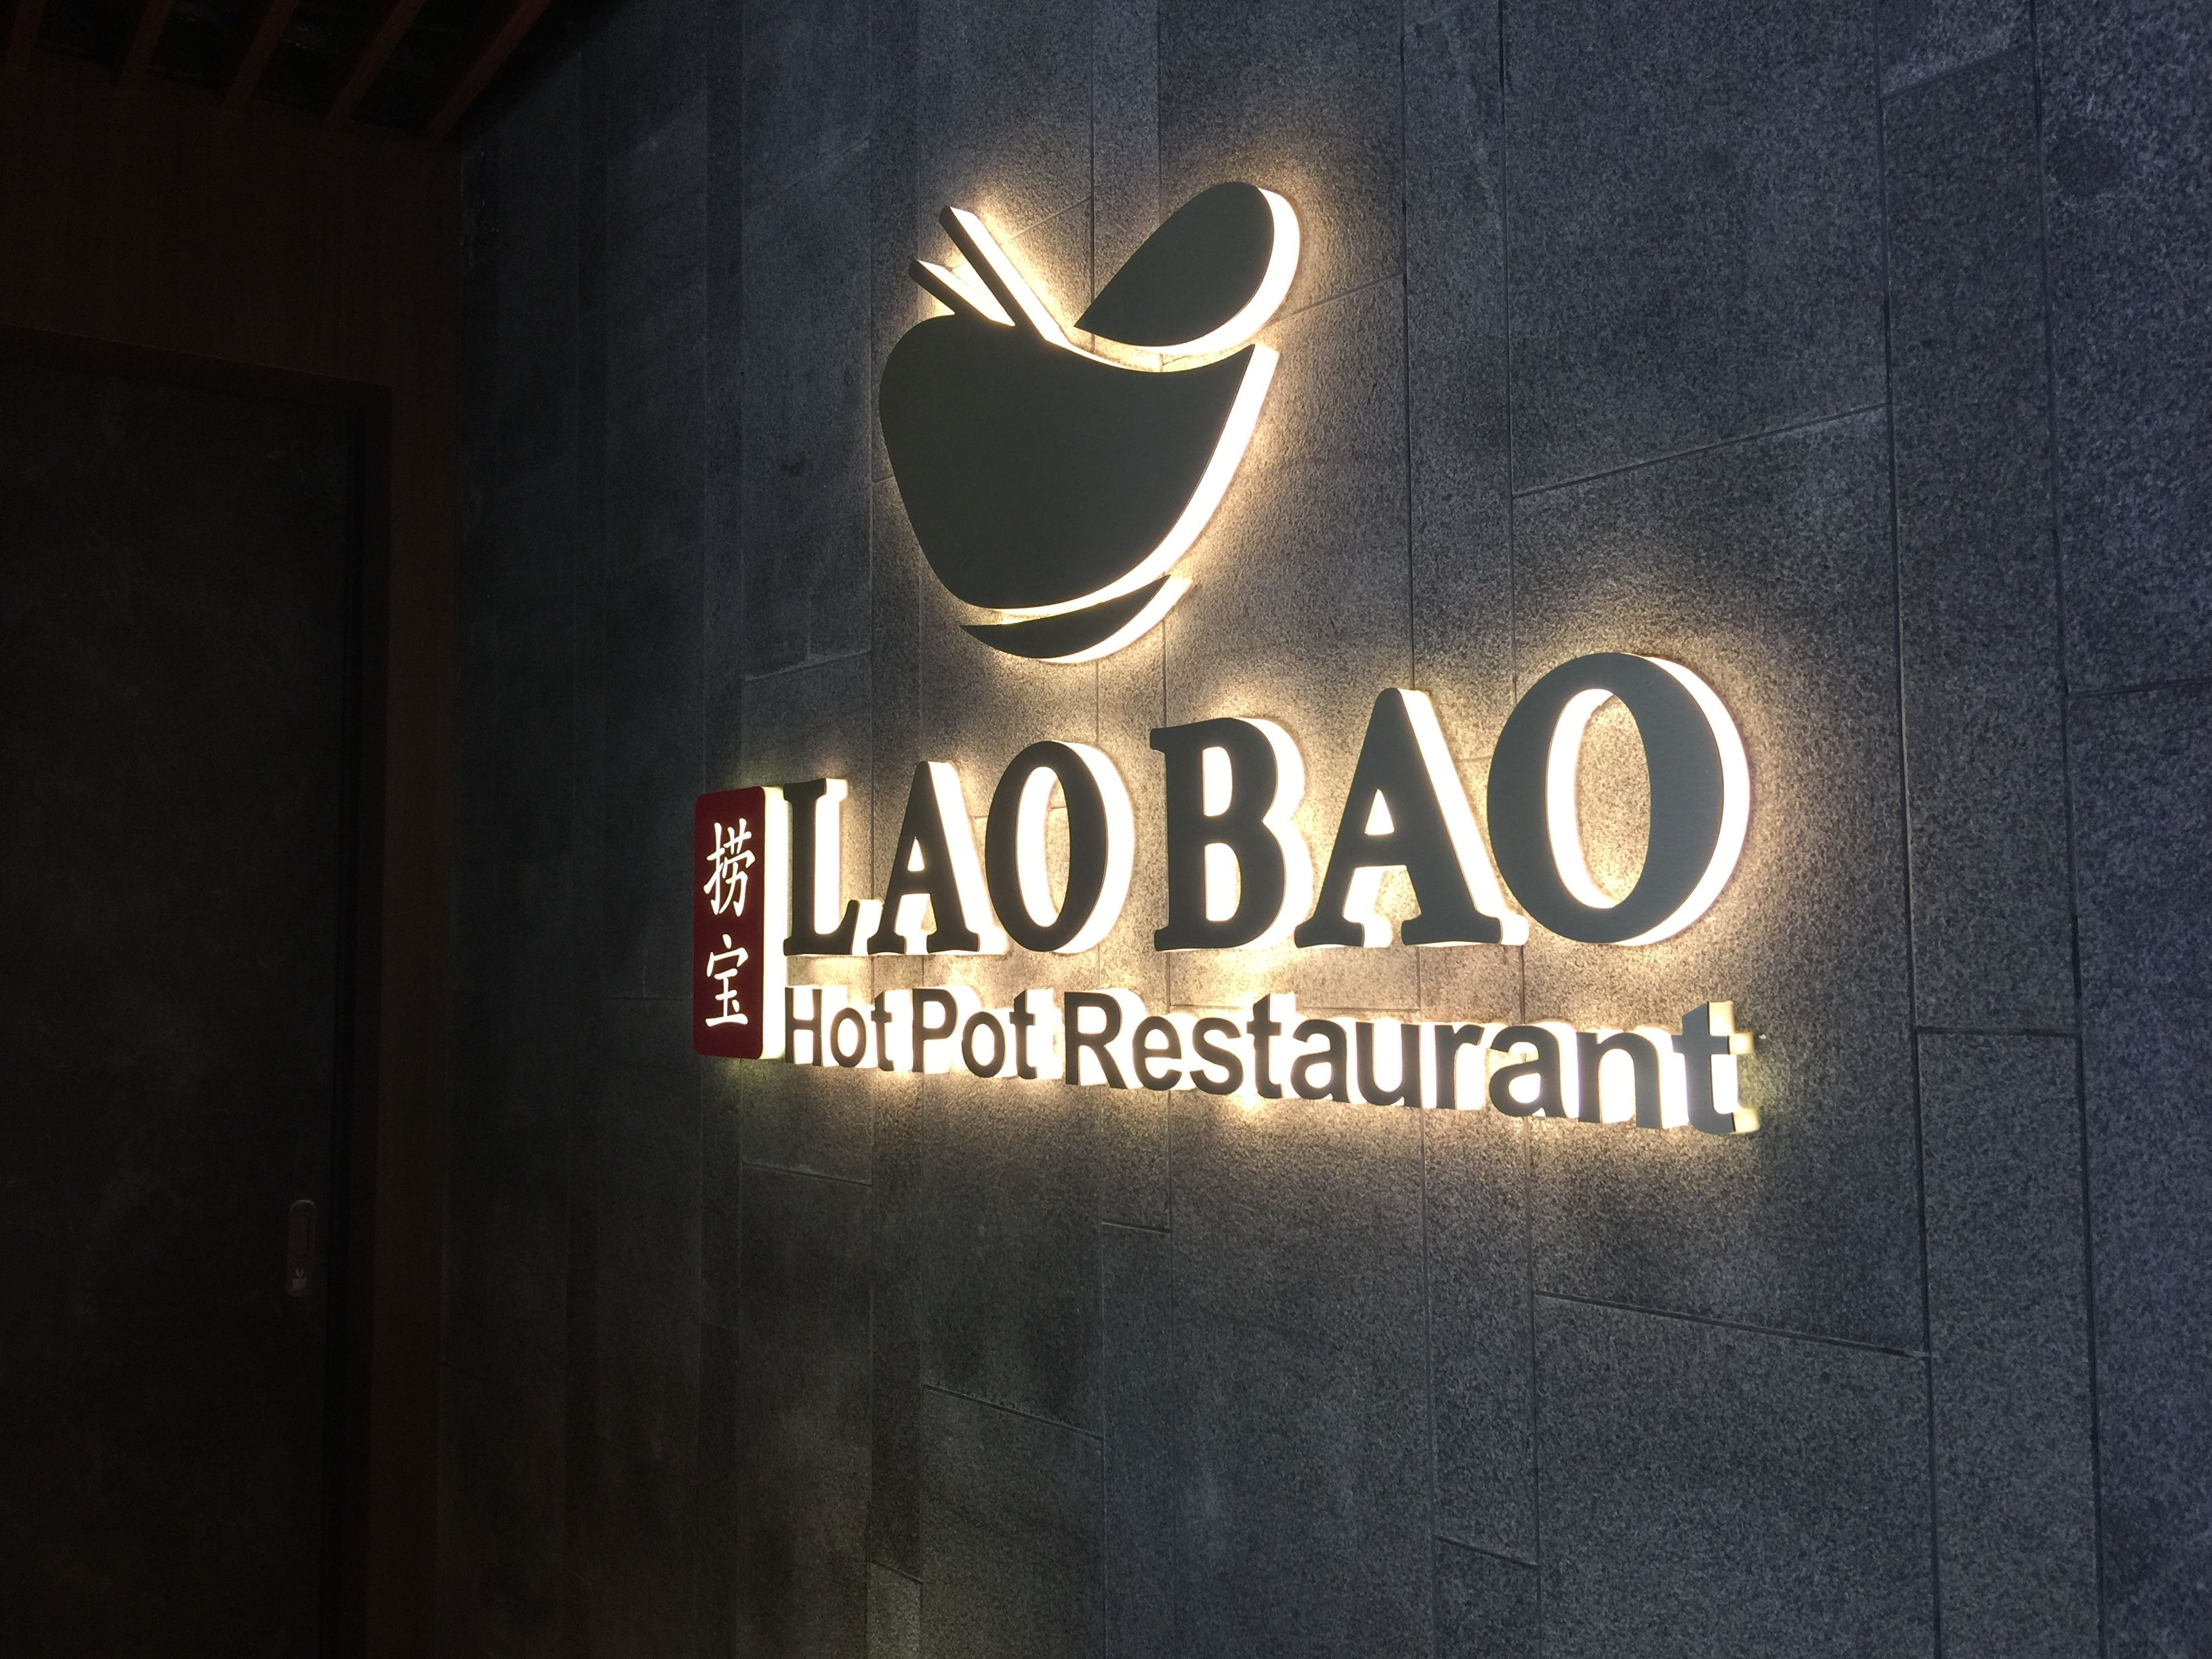 Lao Bao Hot Pot Restaurant